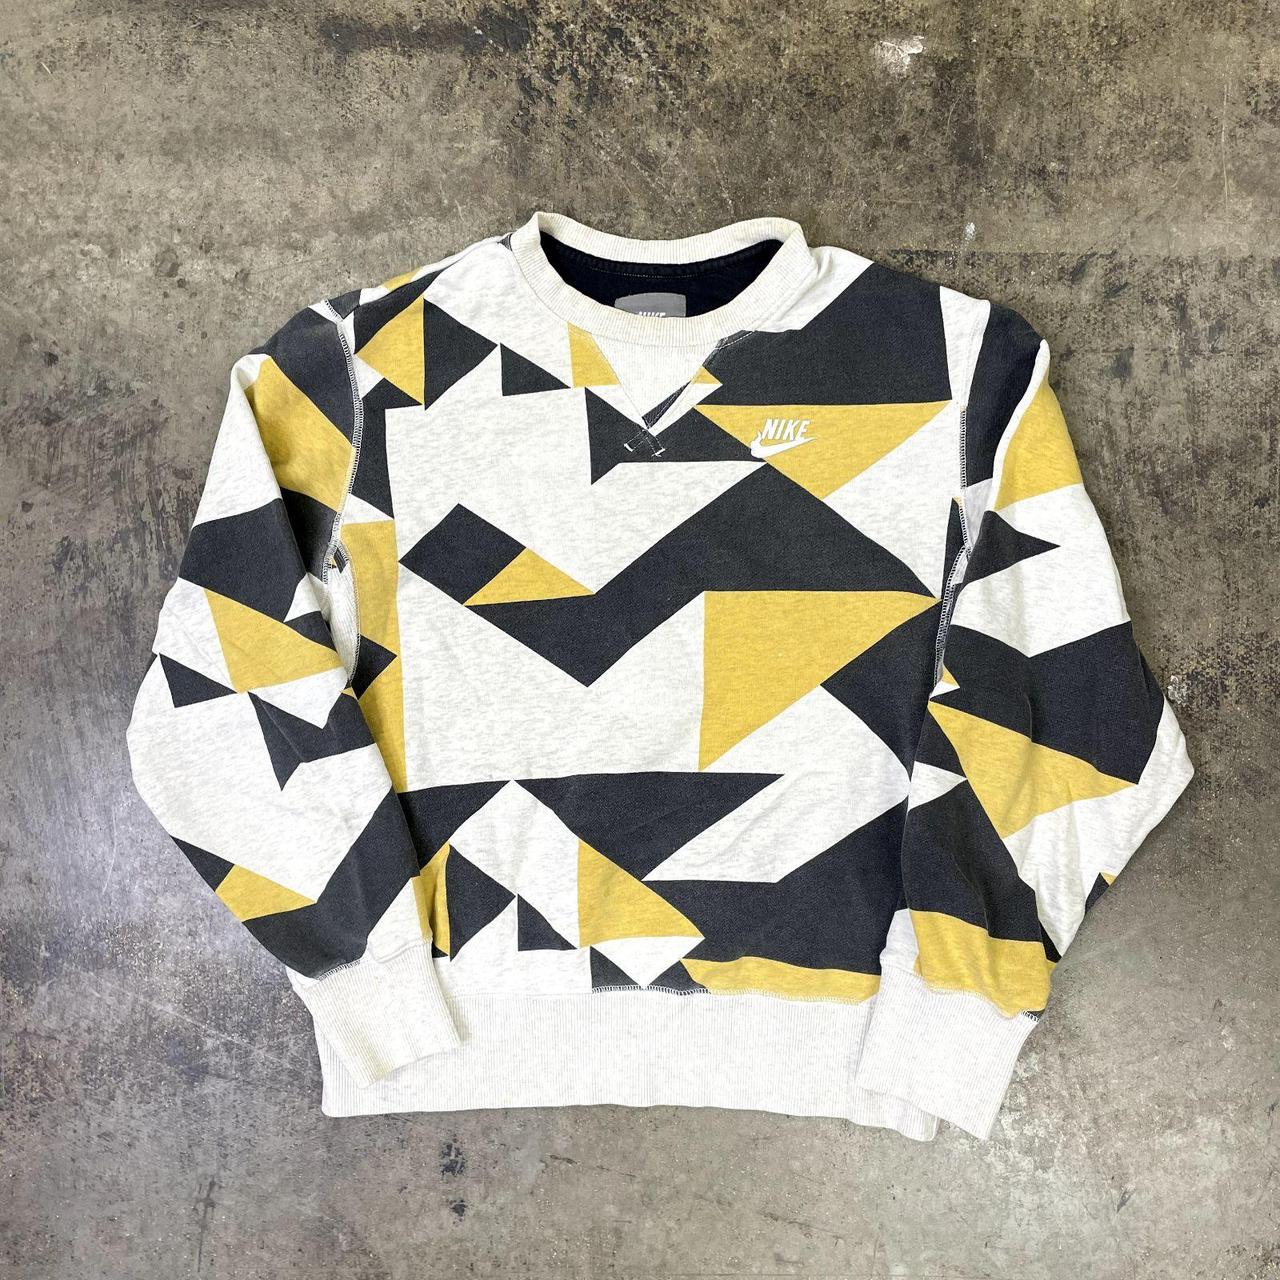 Nike Sweatshirt Swoosh Abstract Print Sportswear... - Depop